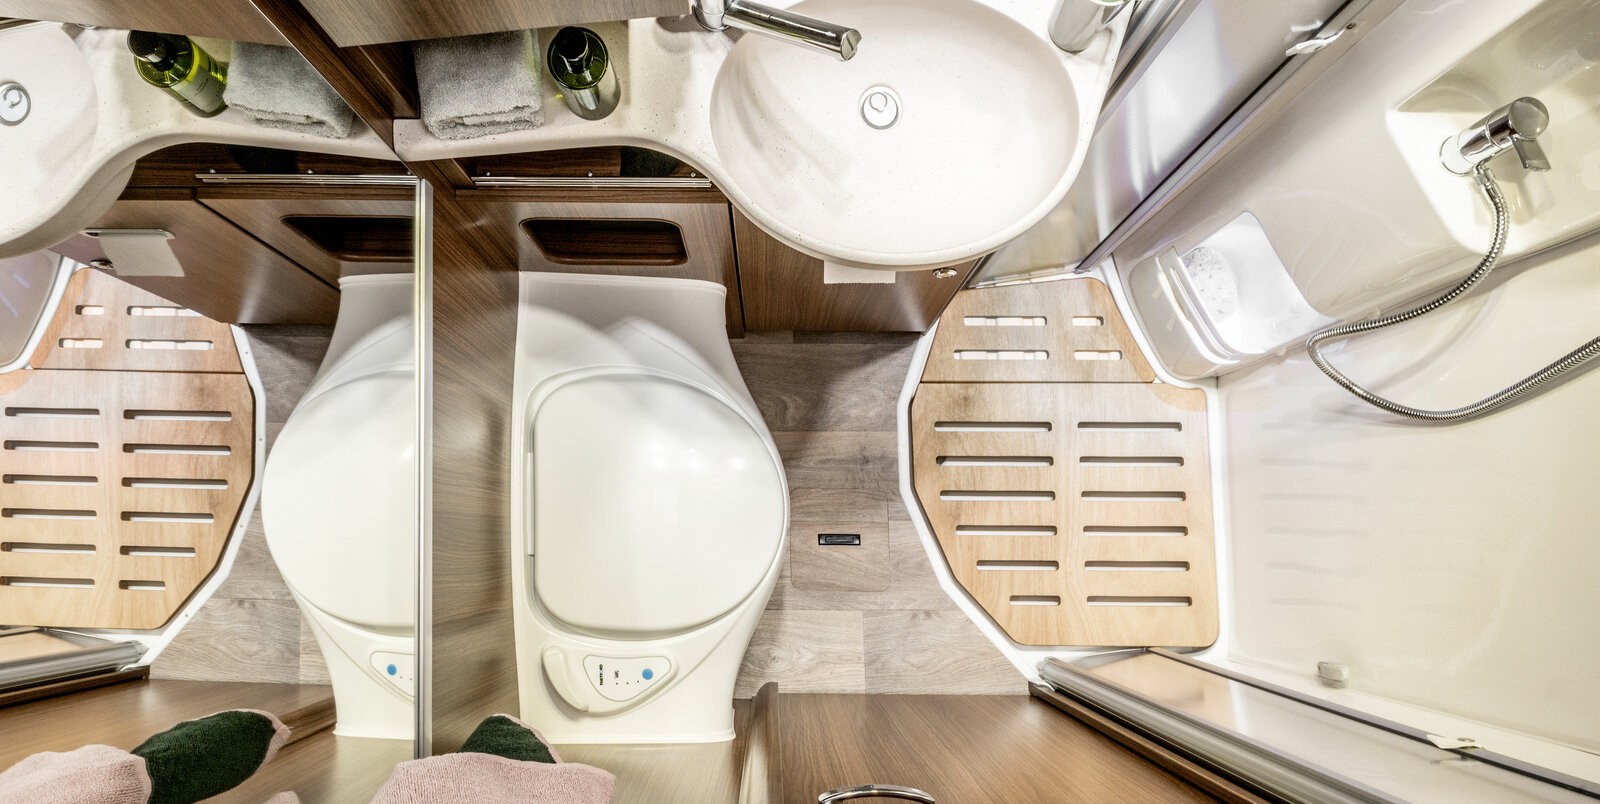 Komfortbad im HYMER ML-T von oben gesehen: Duschkabine mit Holzlattenrost, Waschbecken, Spiegel, Toilette, Ablageschränke